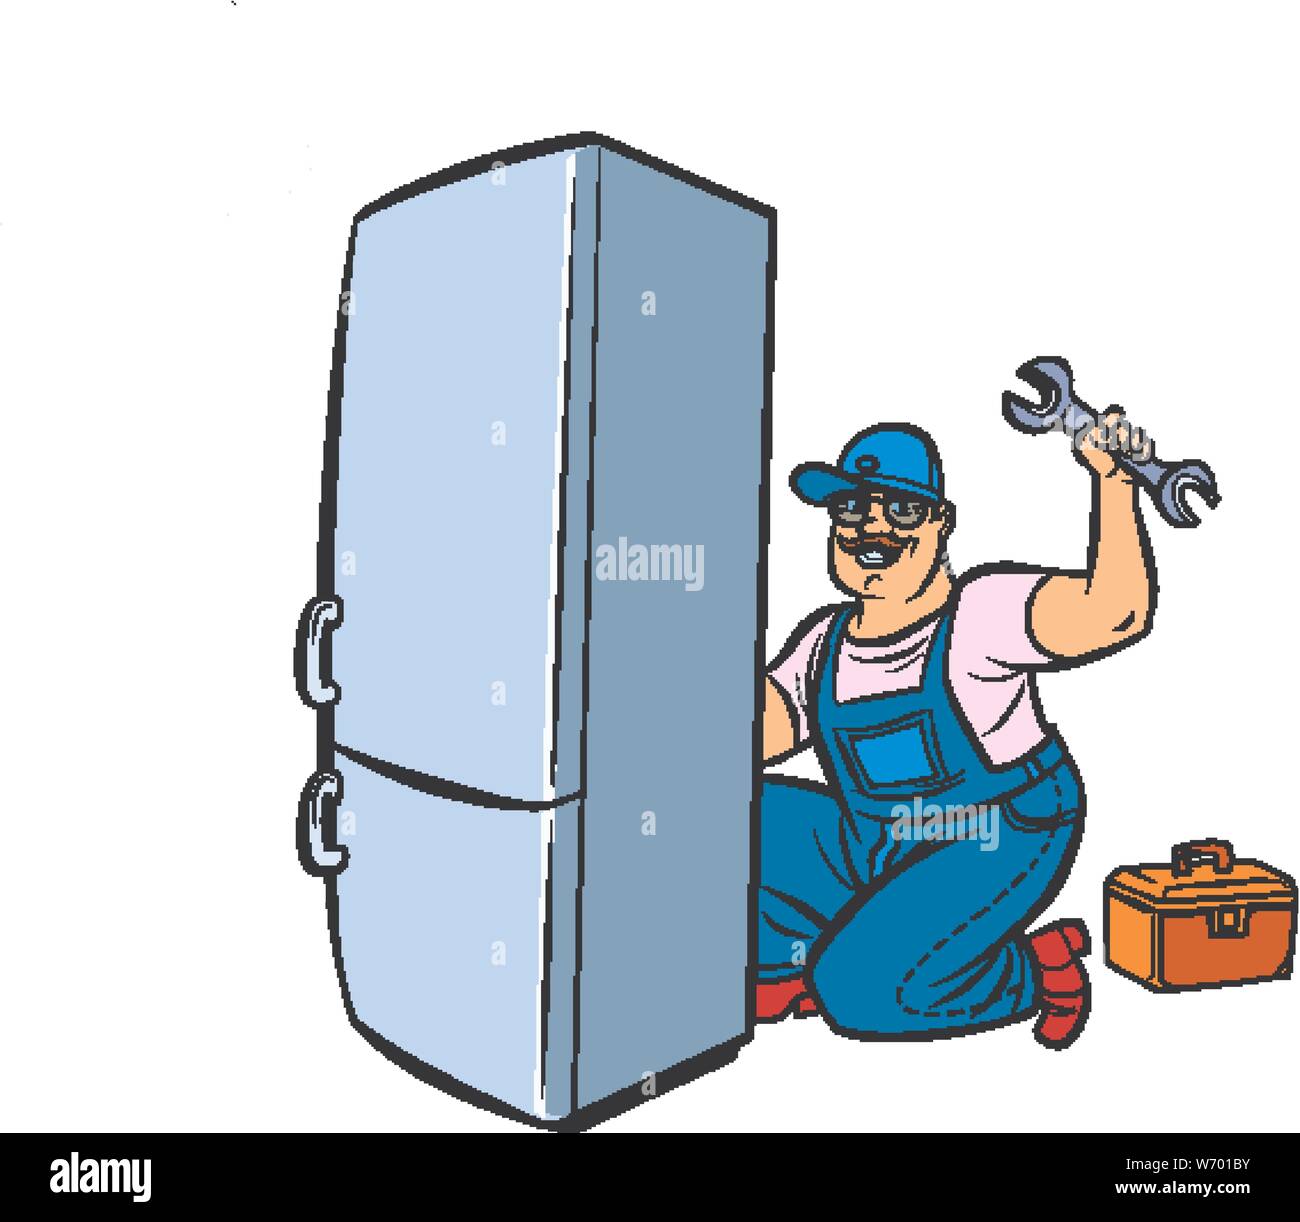 Master frigorifero riparazione. La Pop art retrò illustrazione vettoriale disegno Illustrazione Vettoriale